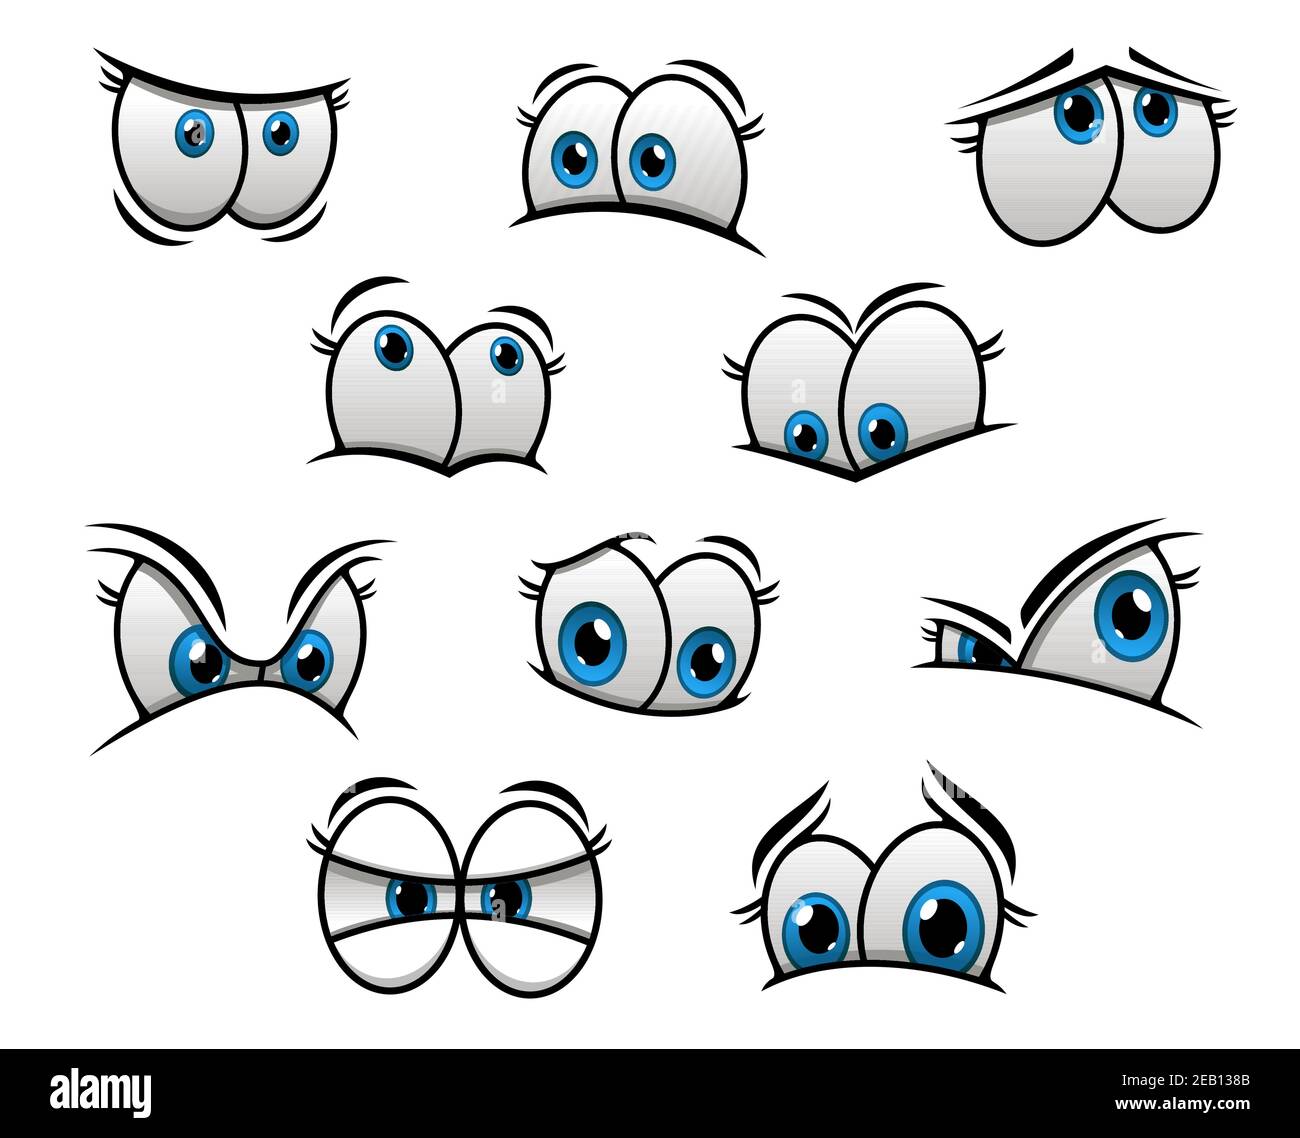 Cute cartooned occhi blu grandi con emozioni felici e arrabbiati per la creazione di personaggi di fumetti Illustrazione Vettoriale